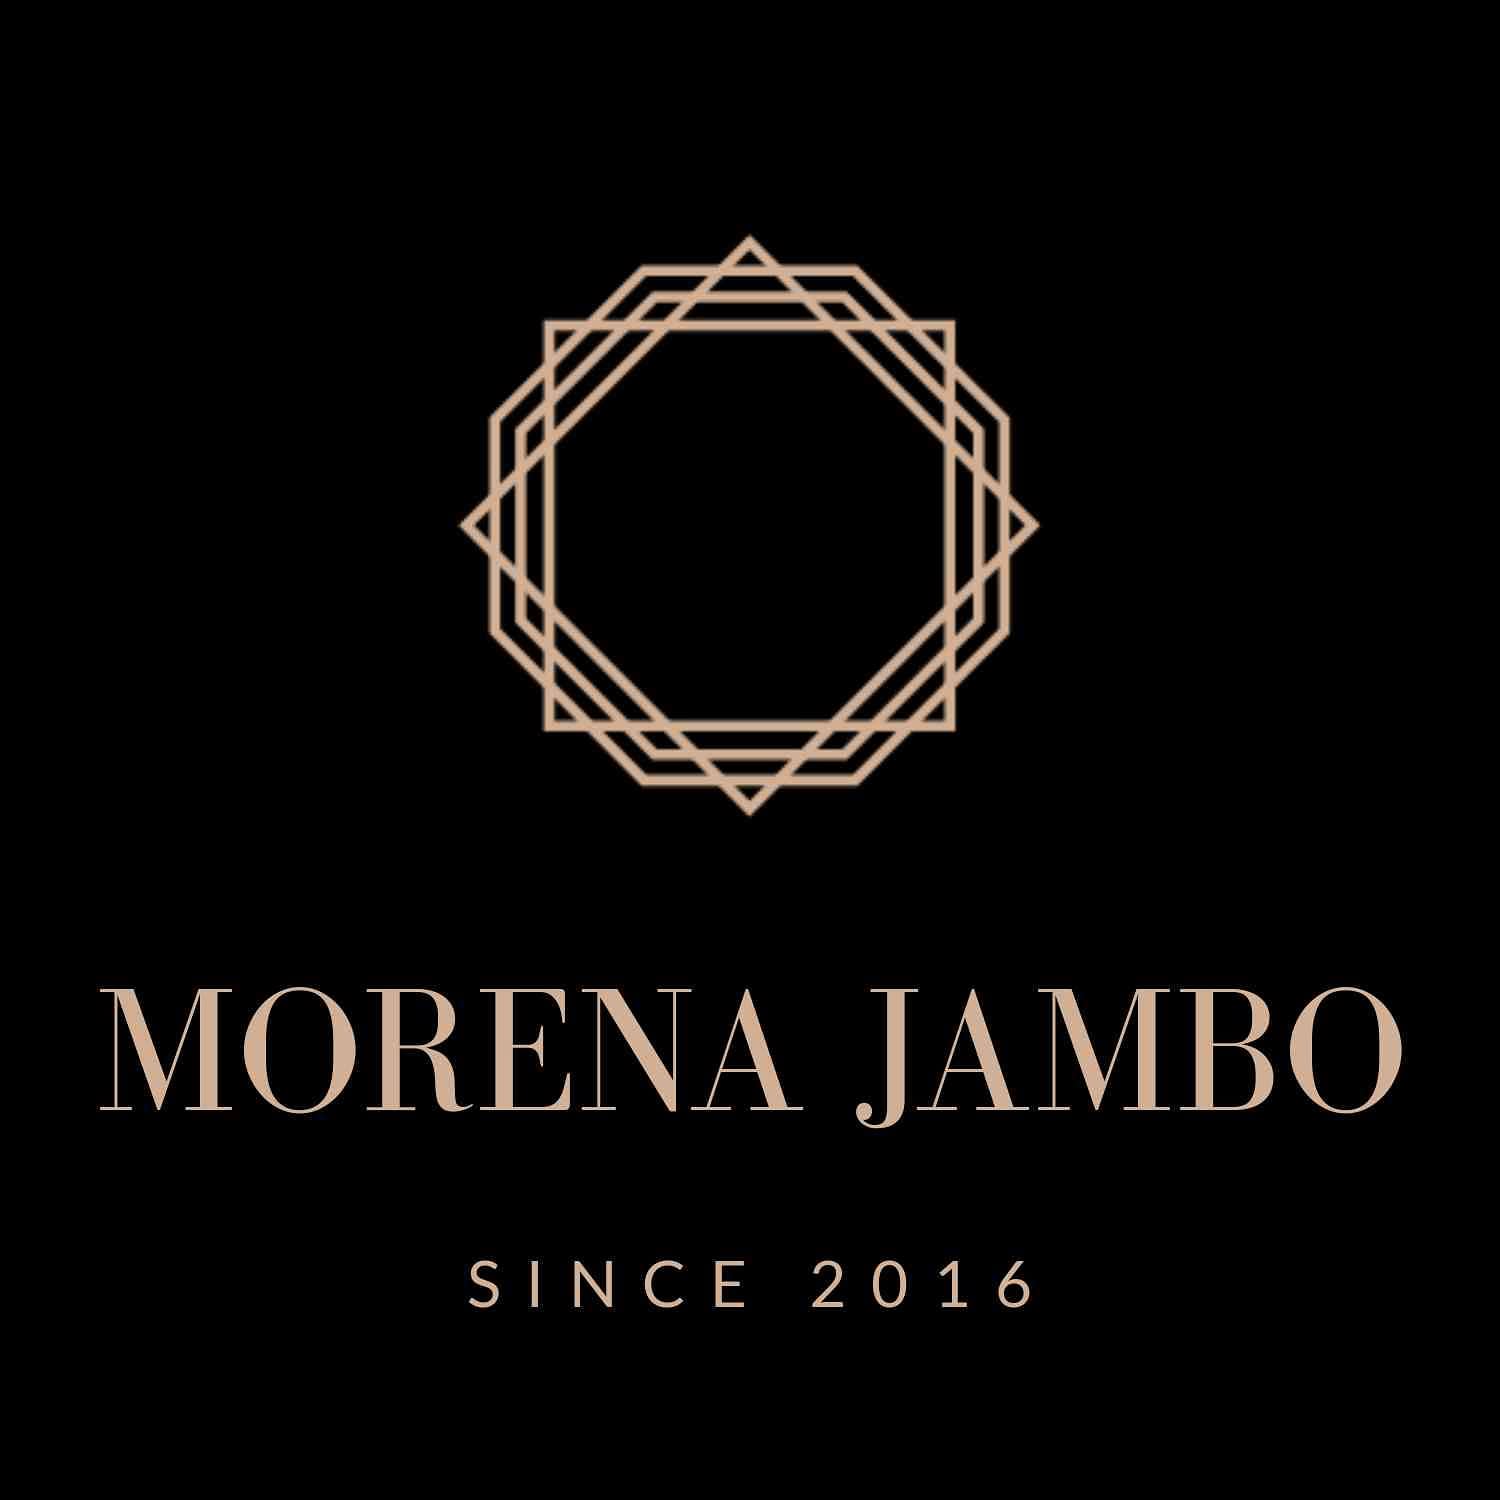 Morena Jambo